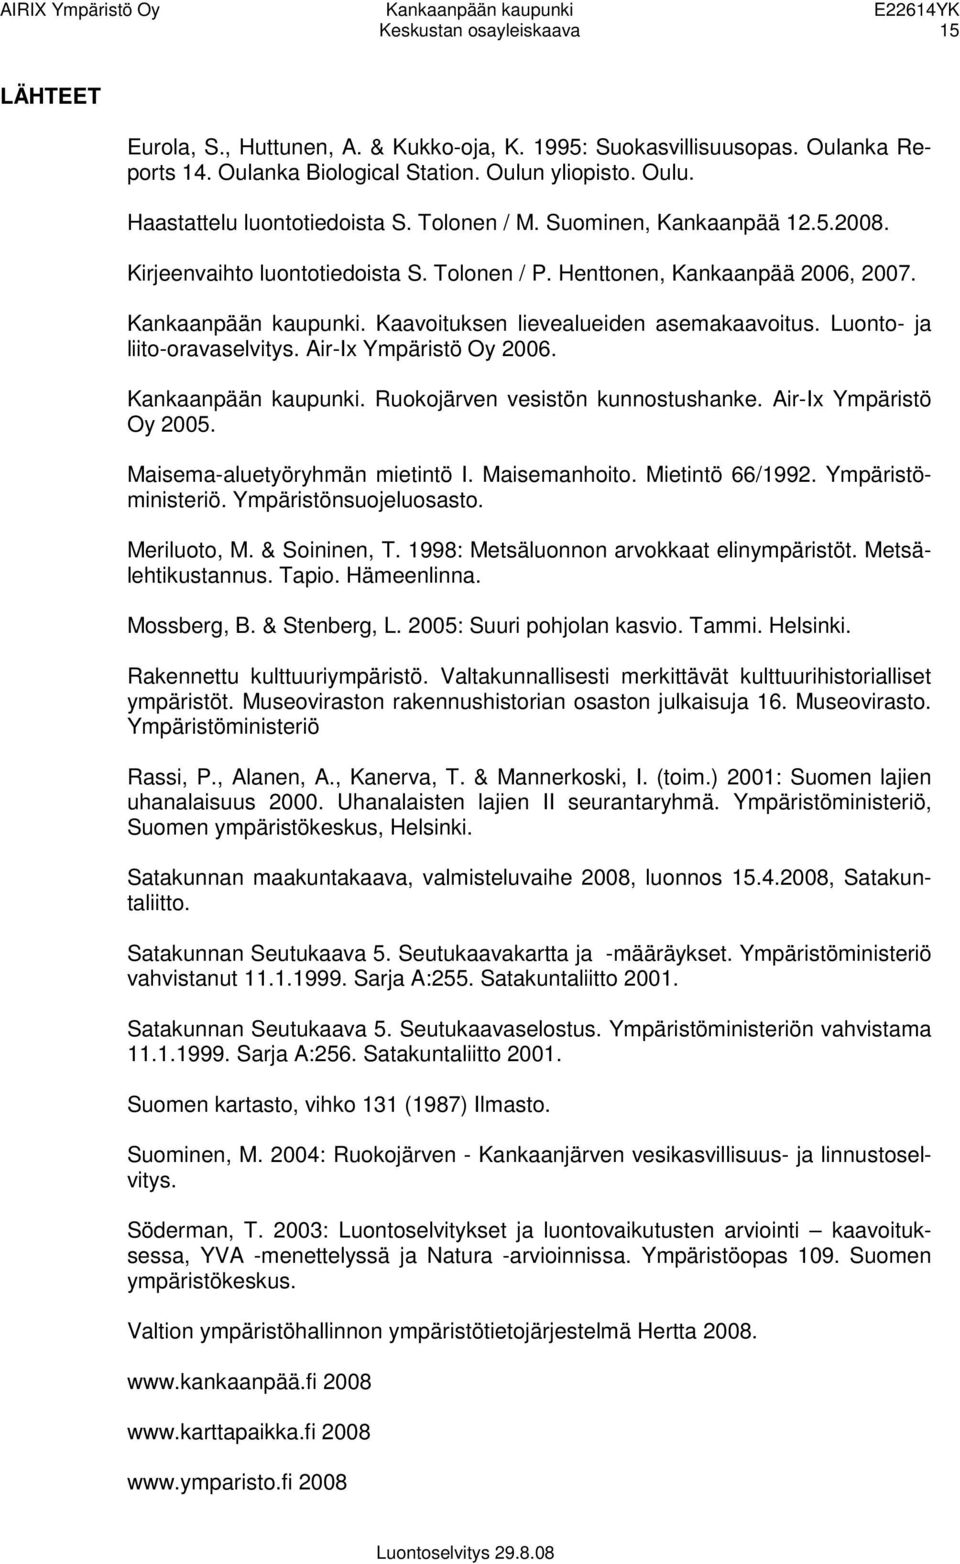 Luonto- ja liito-oravaselvitys. Air-Ix Ympäristö Oy 2006. Kankaanpään kaupunki. Ruokojärven vesistön kunnostushanke. Air-Ix Ympäristö Oy 2005. Maisema-aluetyöryhmän mietintö I. Maisemanhoito.